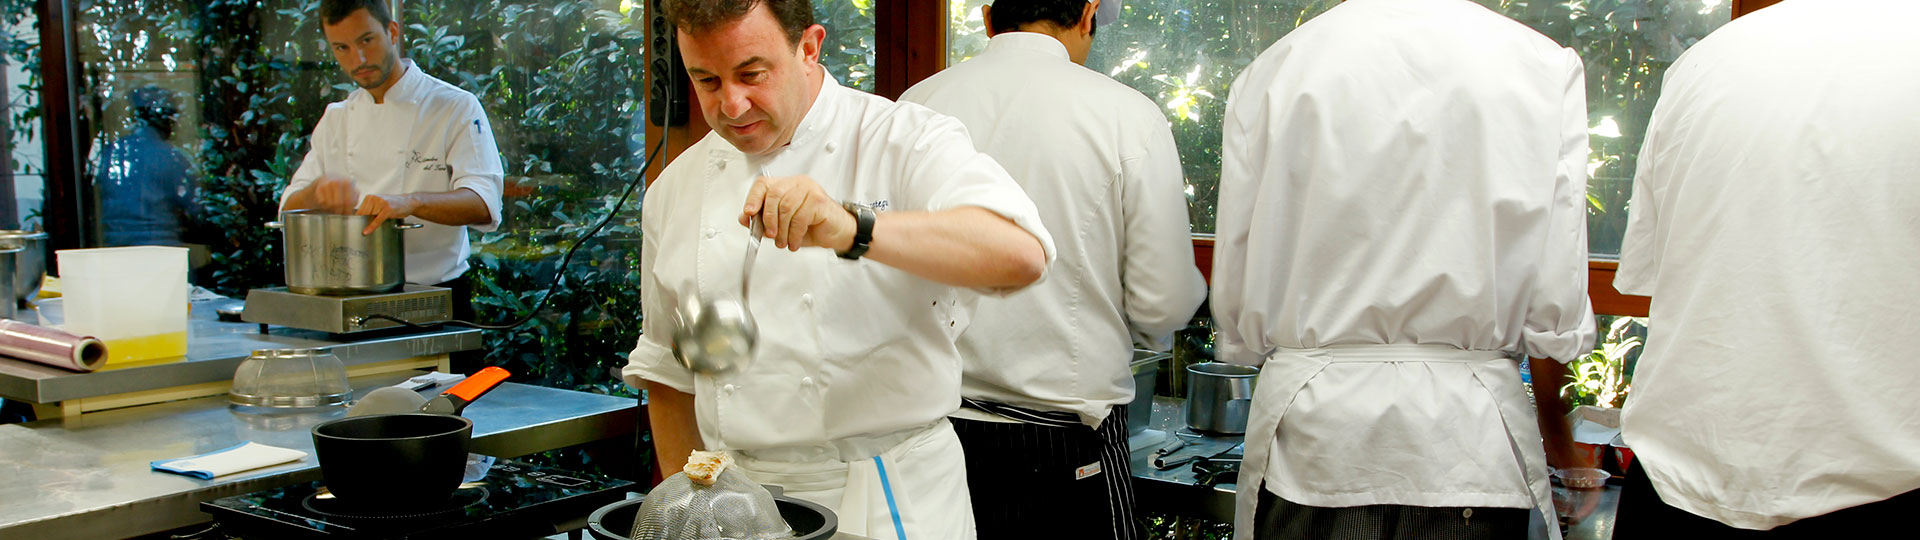 Lo chef Martín Berasategui mentre cucina